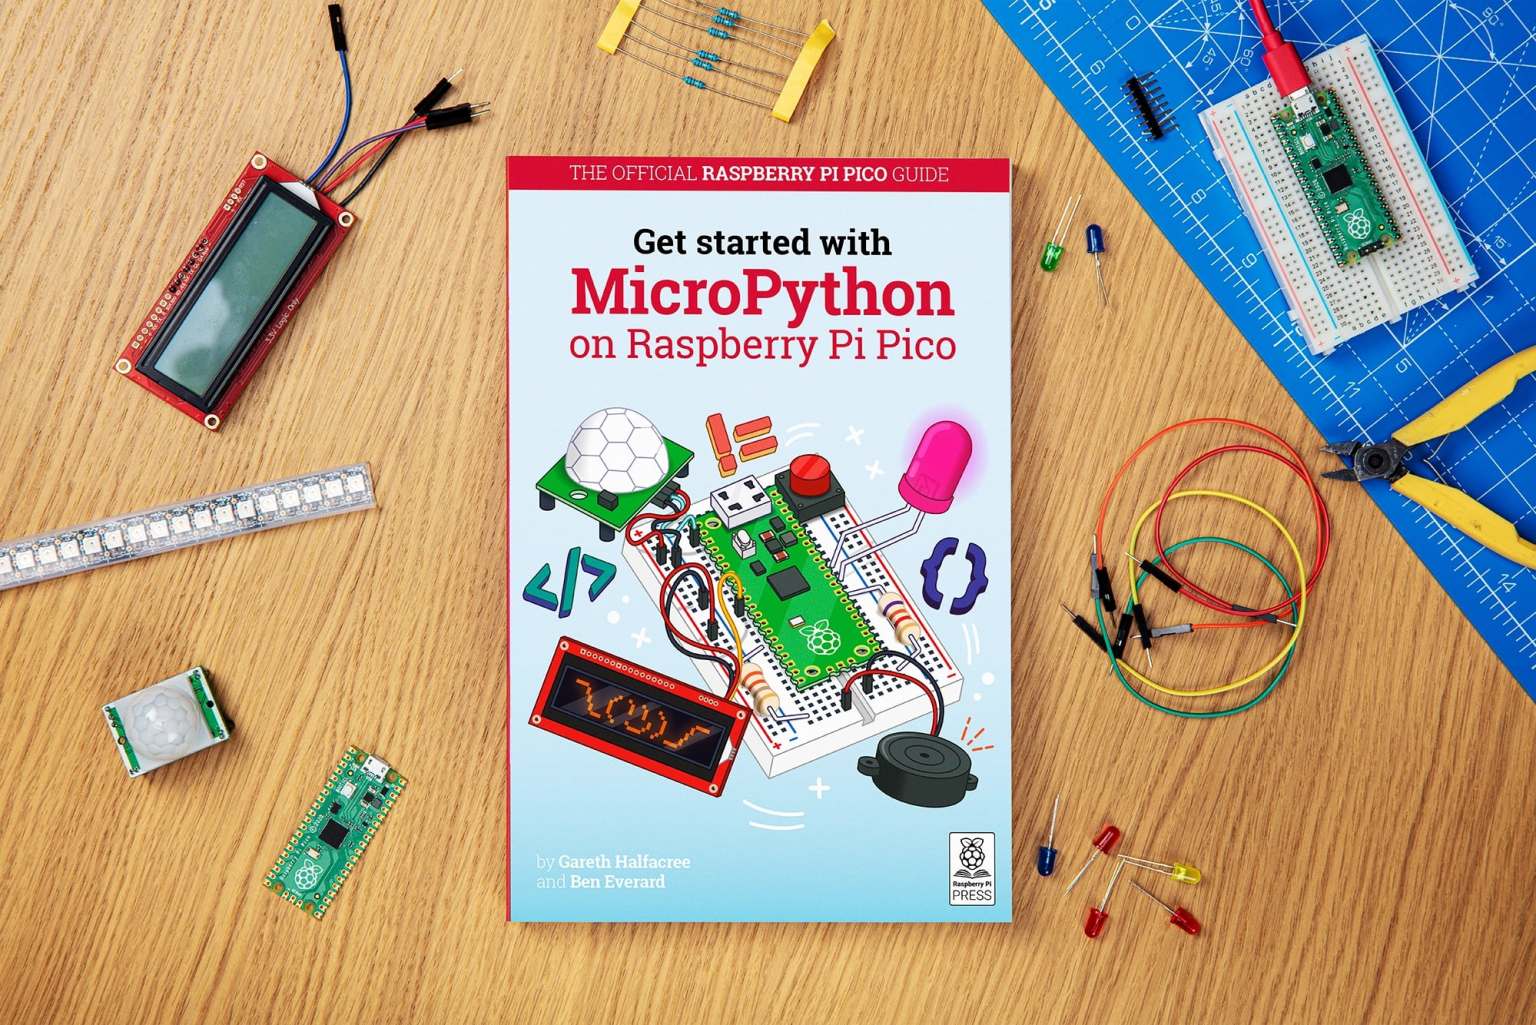 Raspberry-Pi-Pico-2.jpg?resize=1536,1025